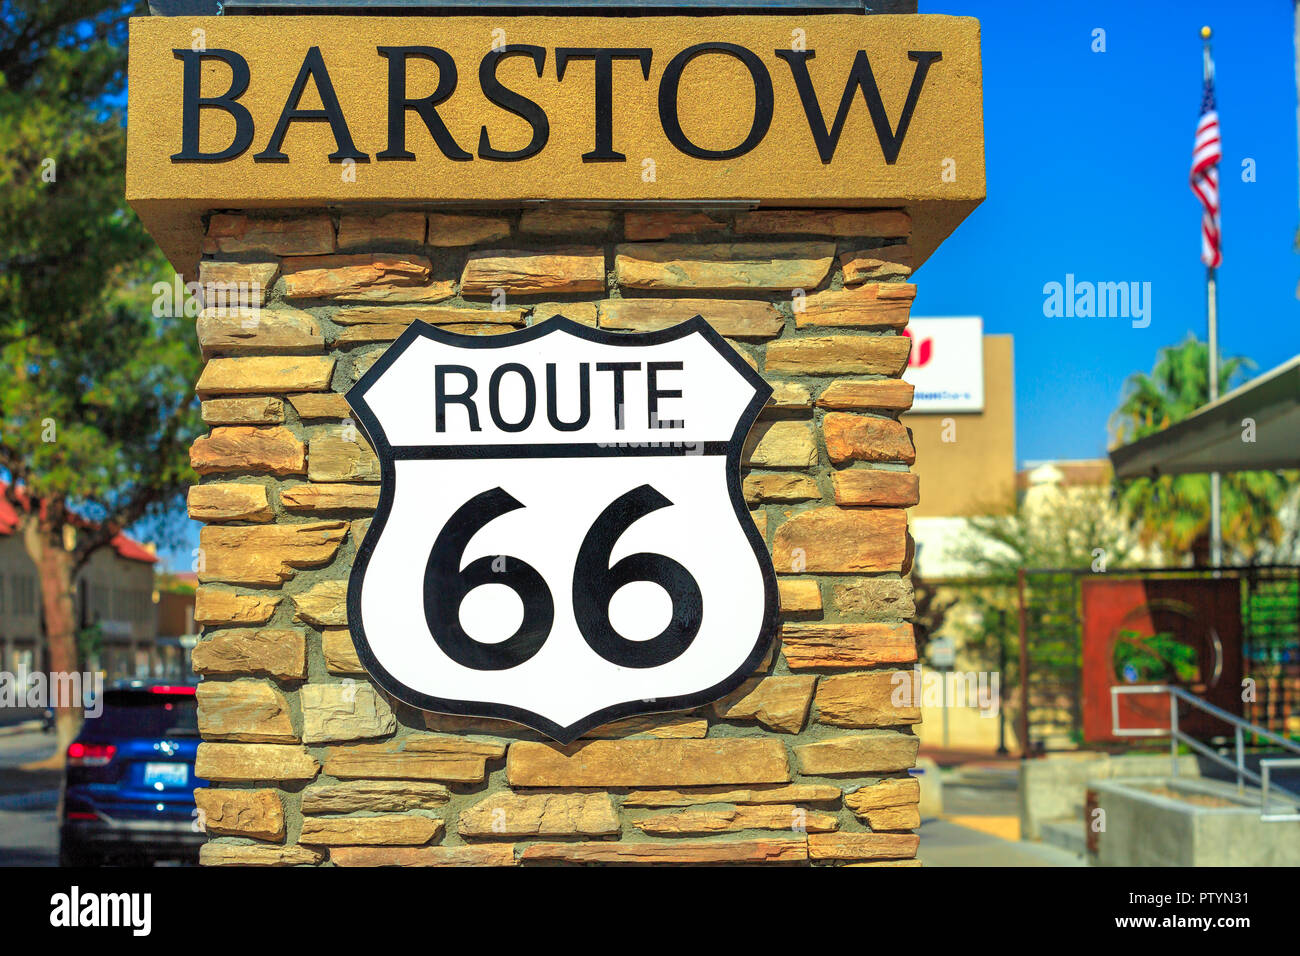 Barstow, California, USA - 15 août 2018 : de l'historique Route 66 road sign le long de la rue principale de Barstow. Célèbre Mother road ou soixante six signe, États-Unis d'Amérique. Banque D'Images